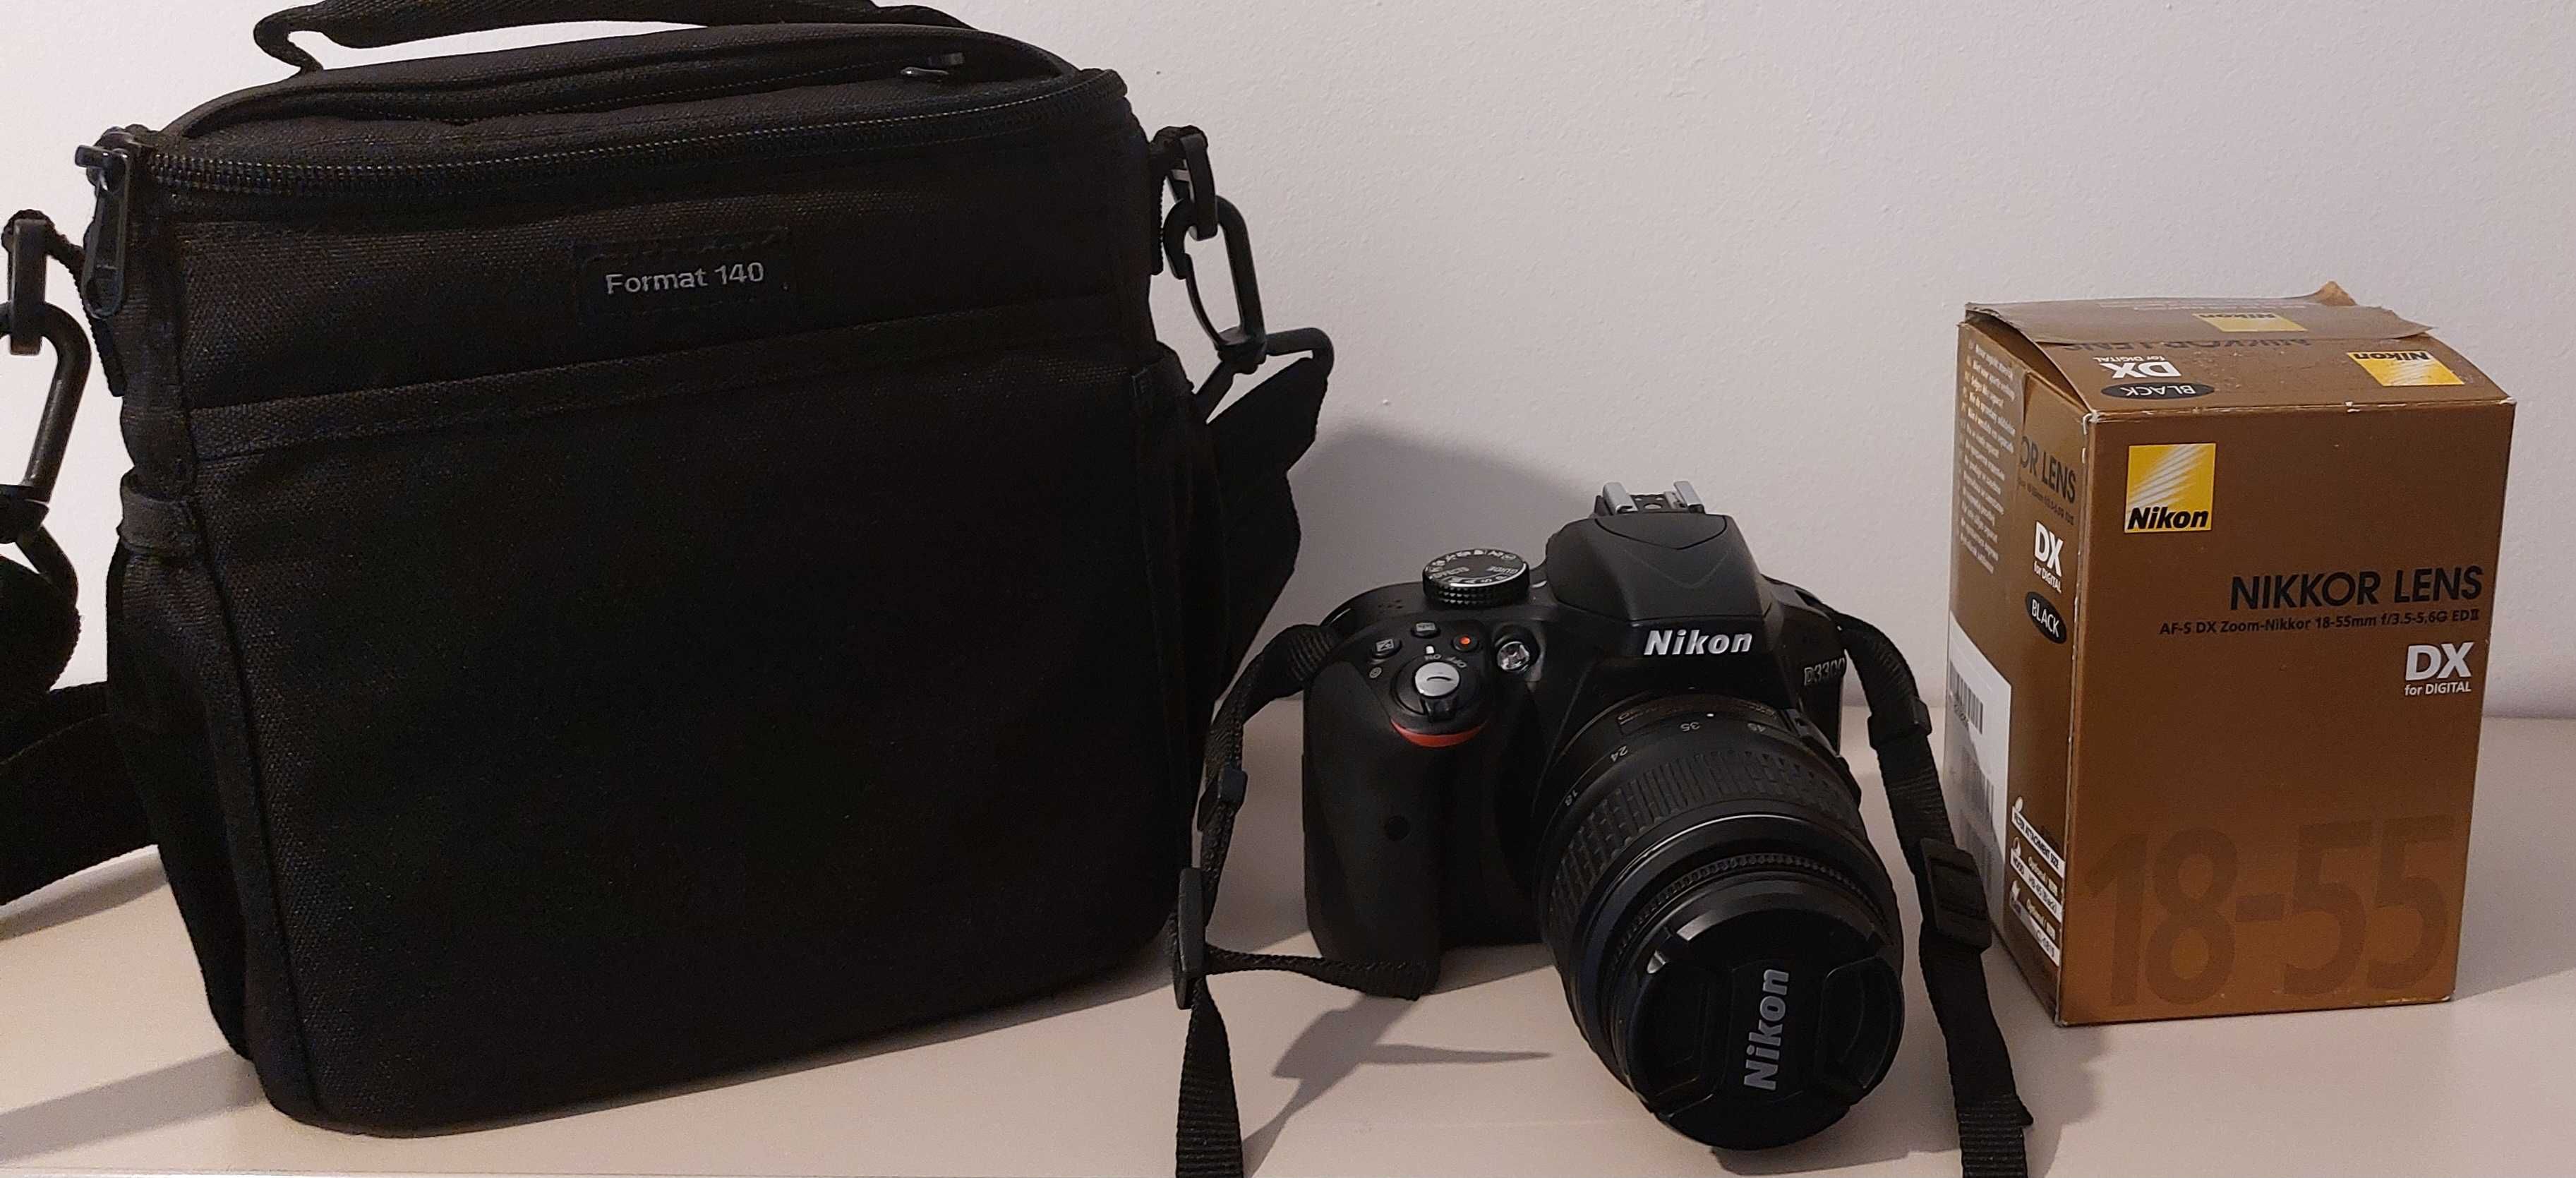 Nikon D3300 kit 18-55mm VR II AF-s DX